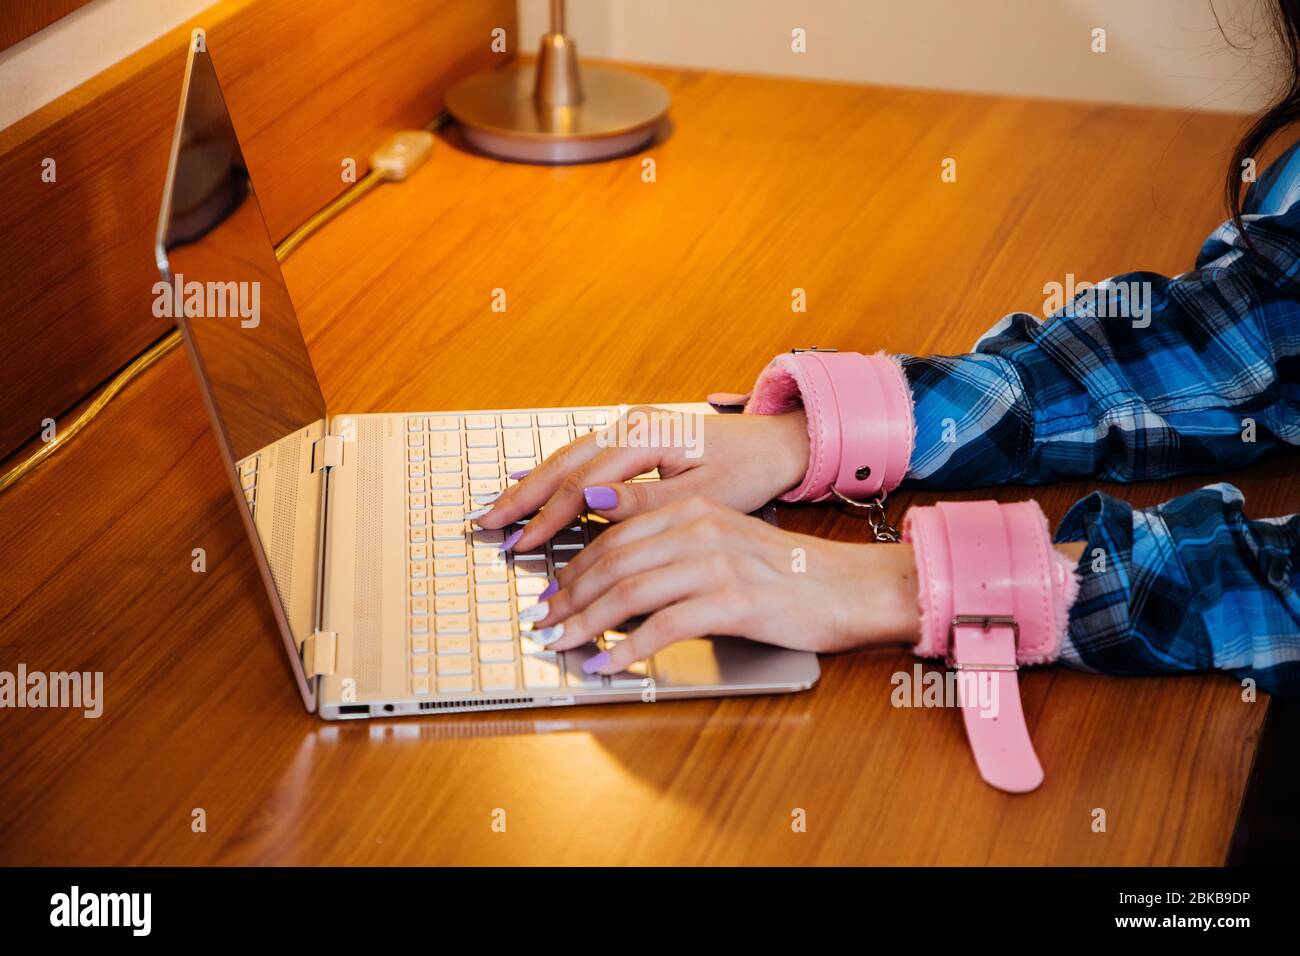 Le mani con manette rosa scrivono sulla tastiera di un notebook sottile; simbolo per essere attaccate al computer durante la quarantena, lo stress o la dipendenza Foto Stock